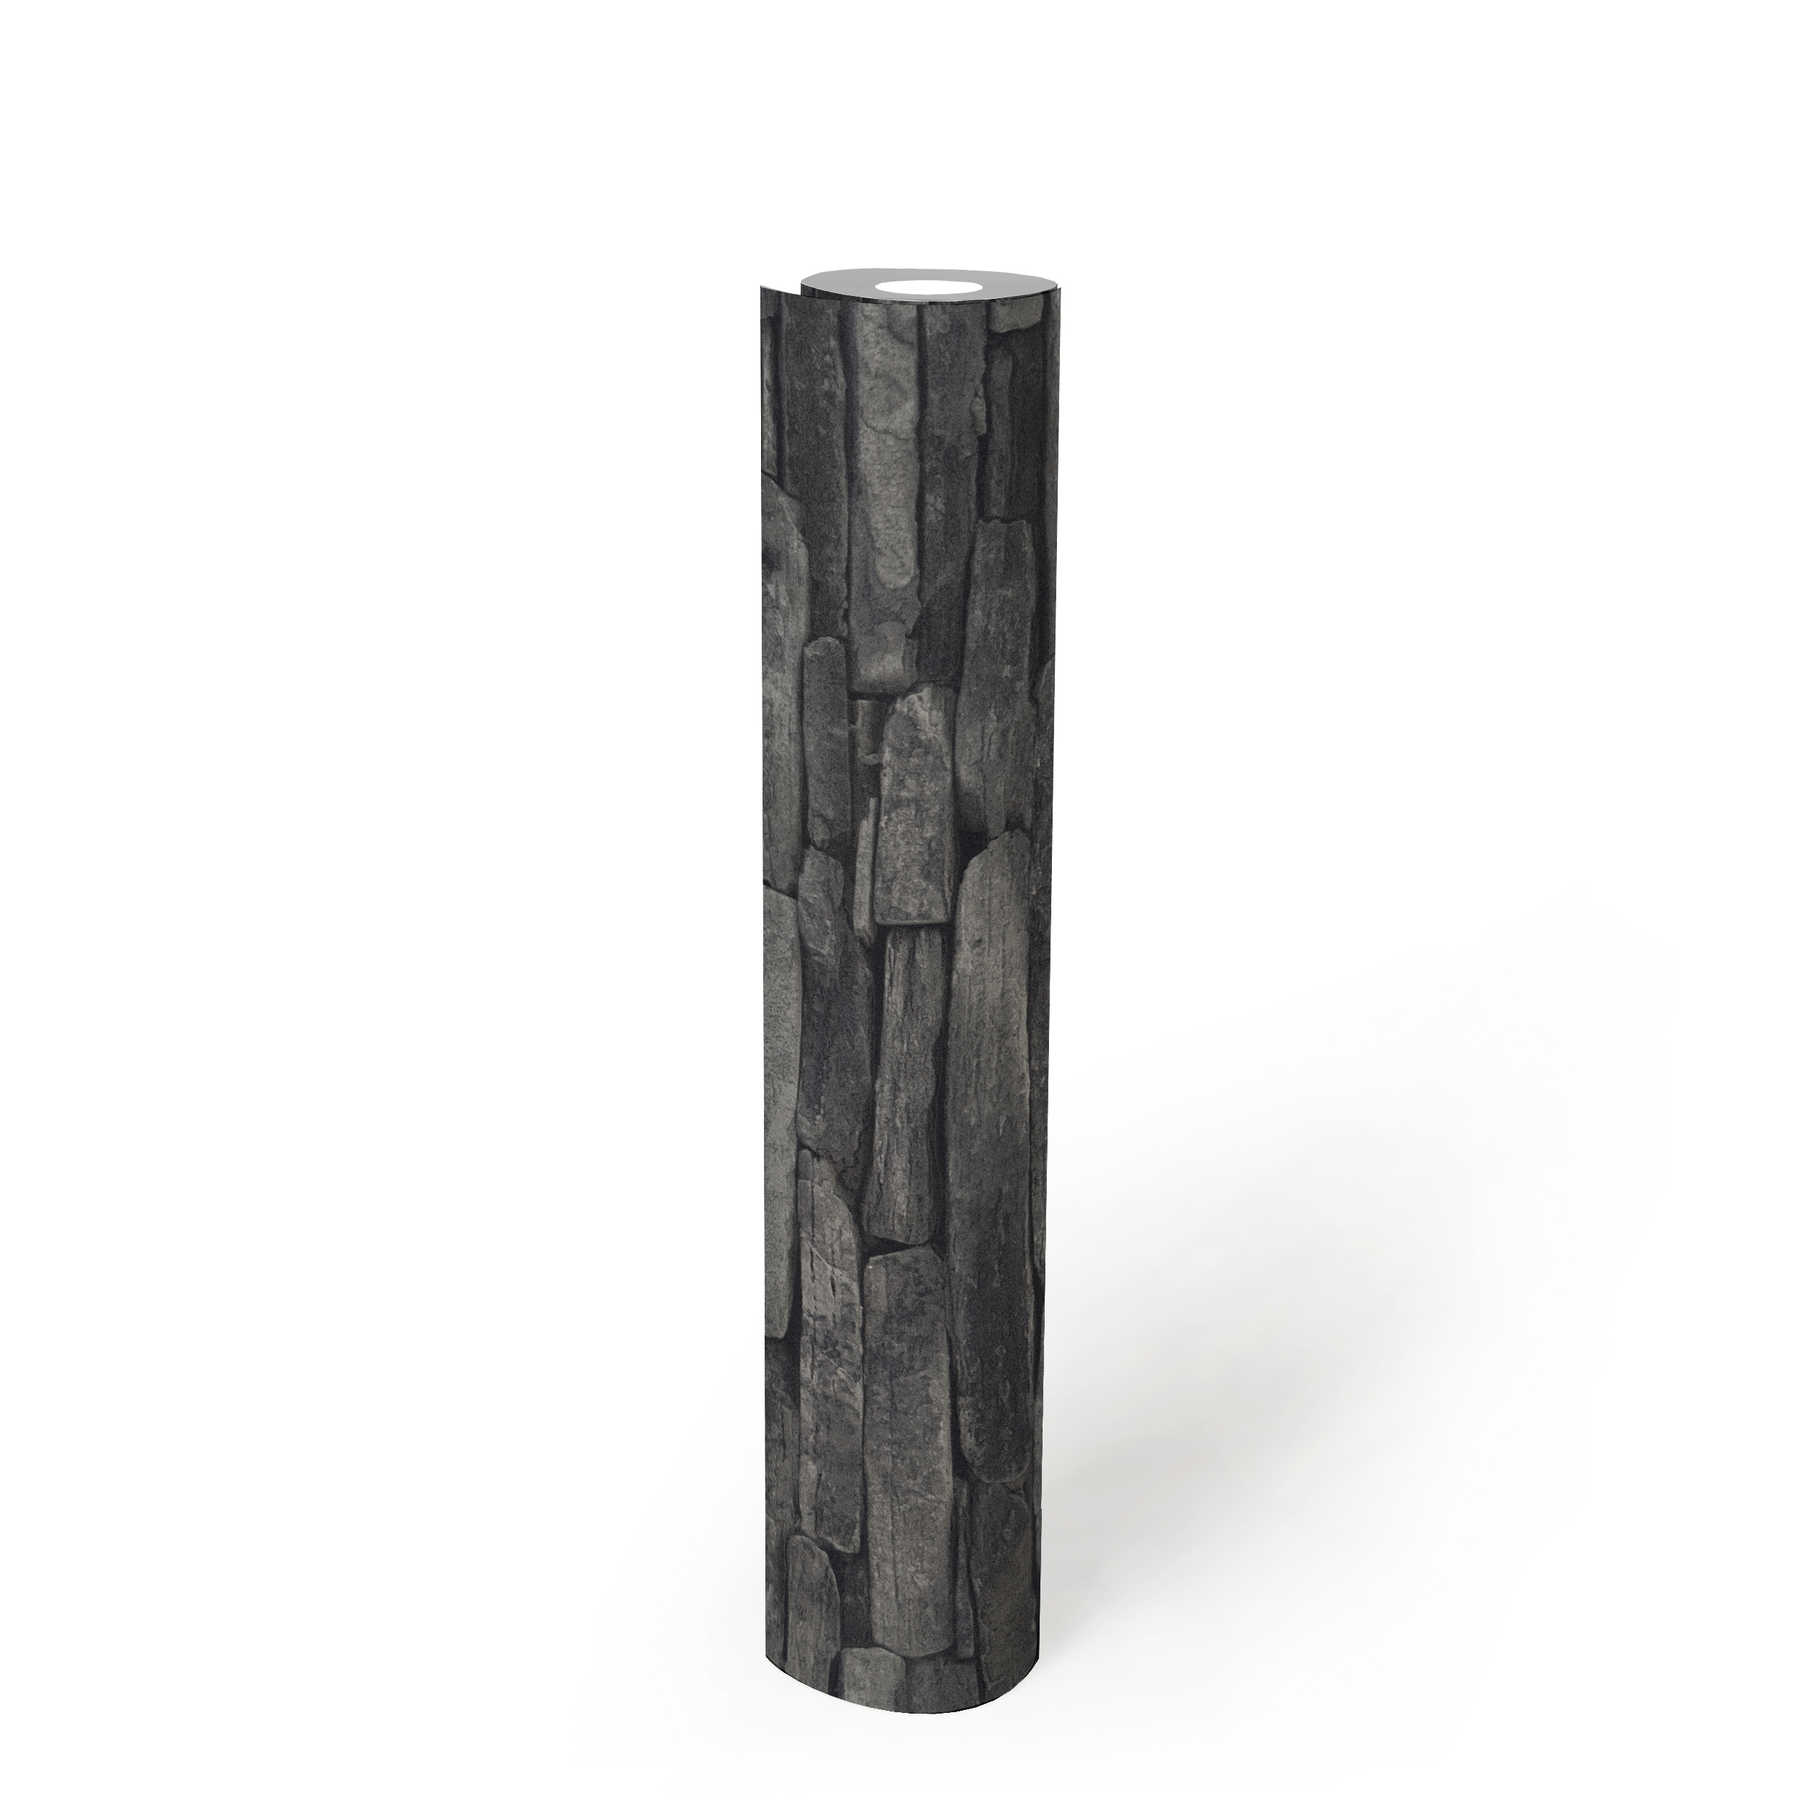             Papier peint imitation pierre, pierres naturelles foncées & effet 3D - gris, noir
        